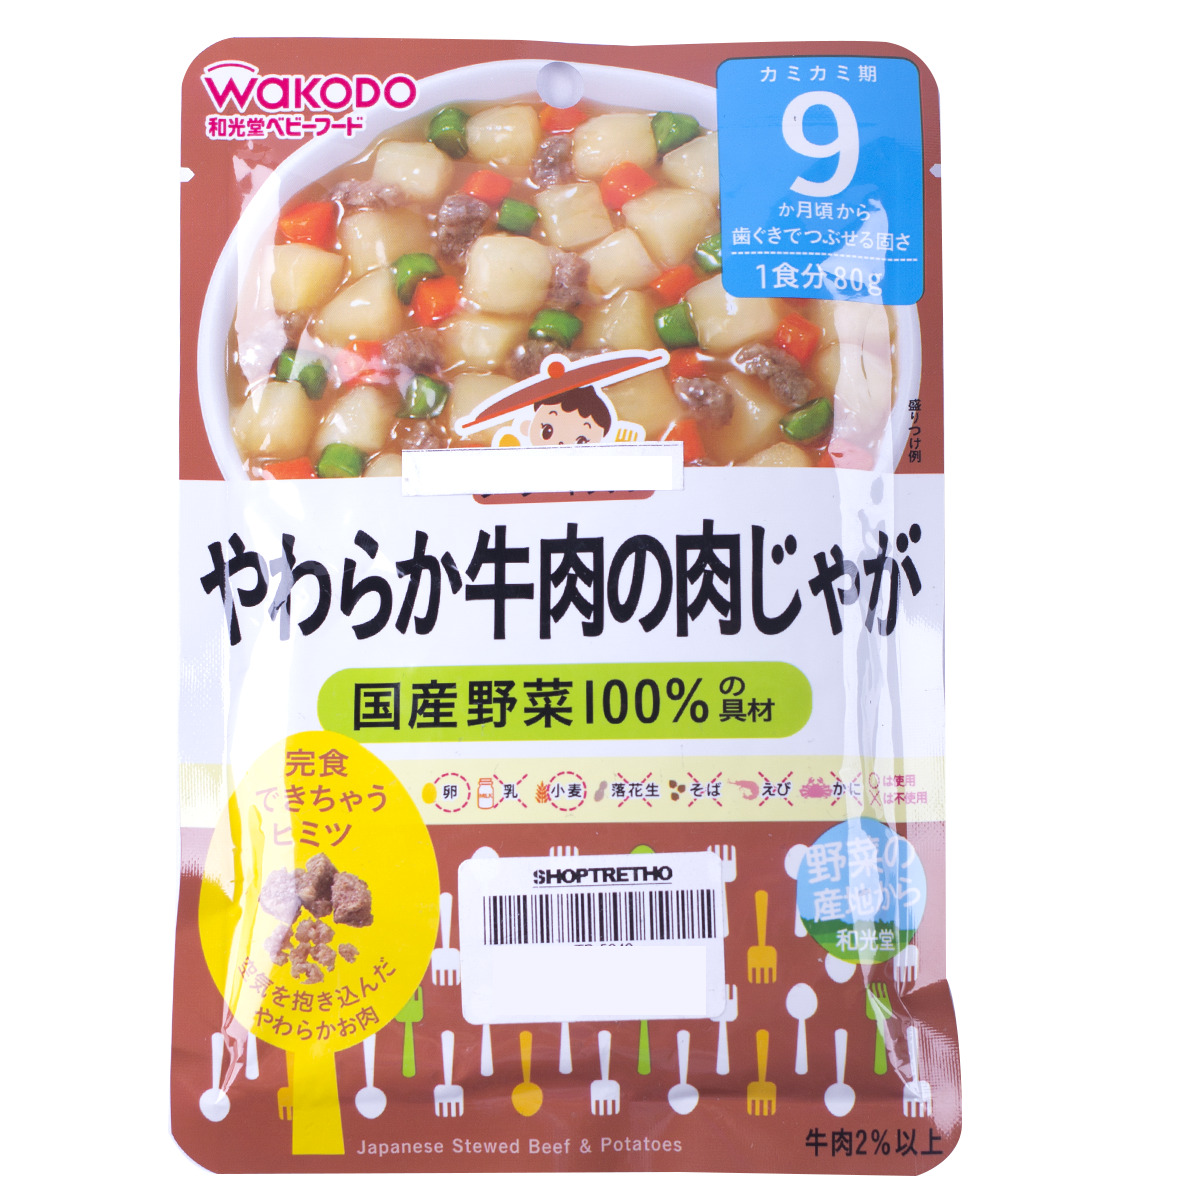 Cháo thịt bò Nhật Bản hầm khoai tây Wakodo (9 tháng)